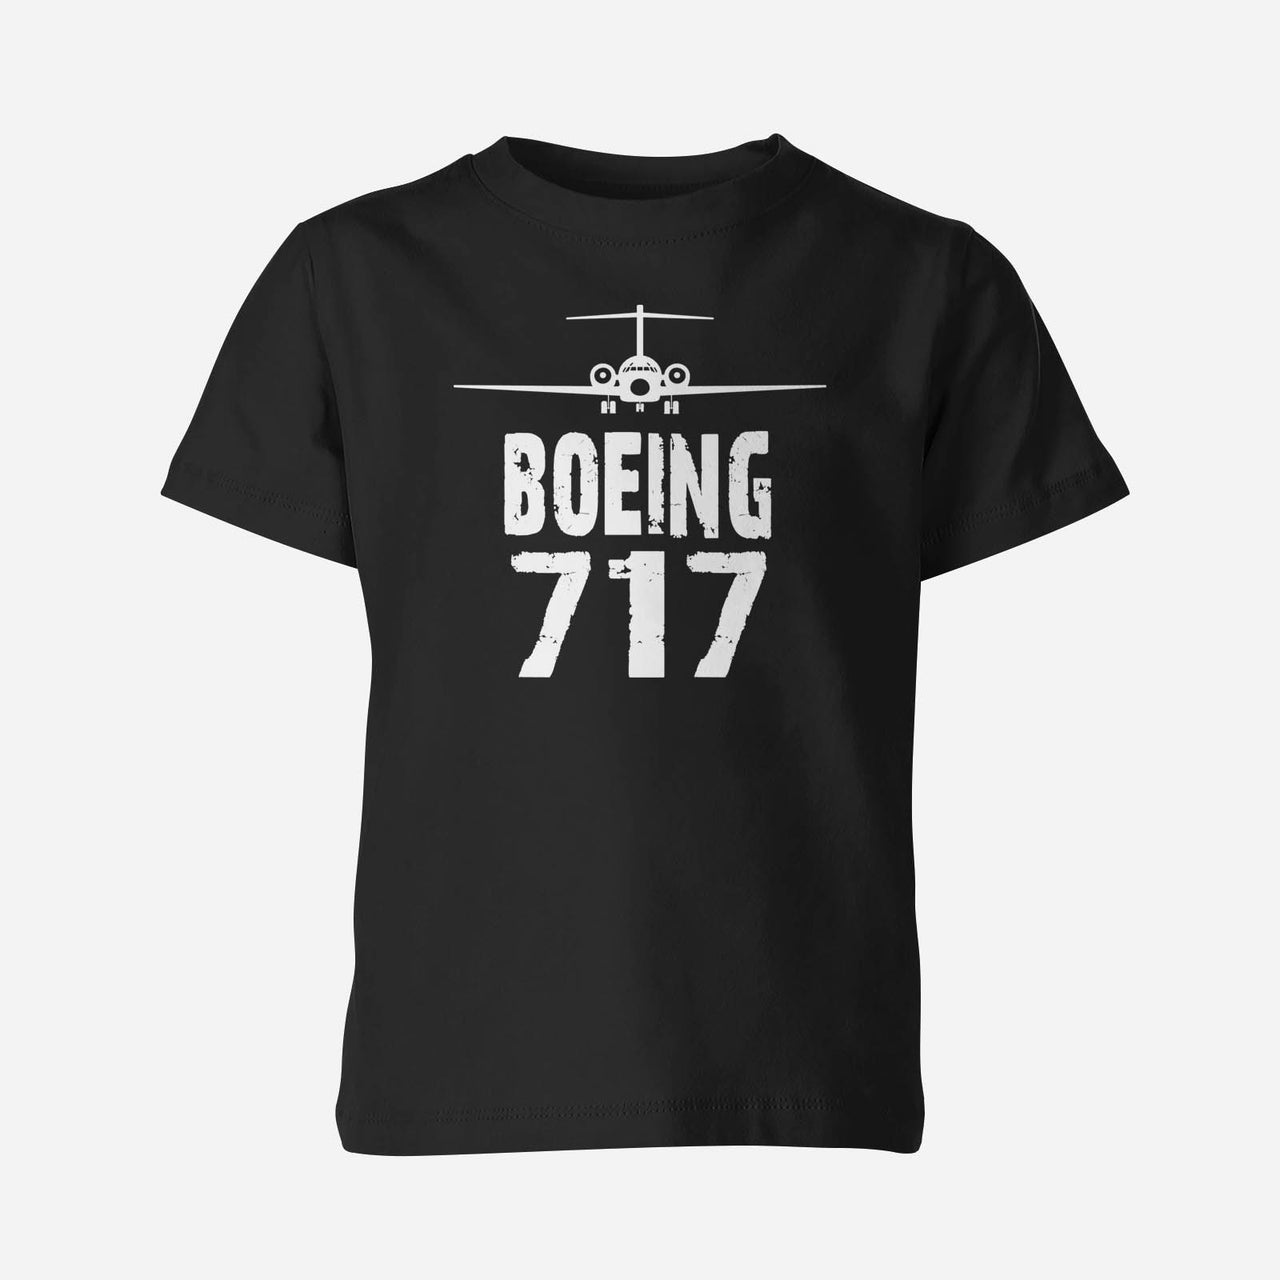 Boeing 717 & Plane Designed Children T-Shirts